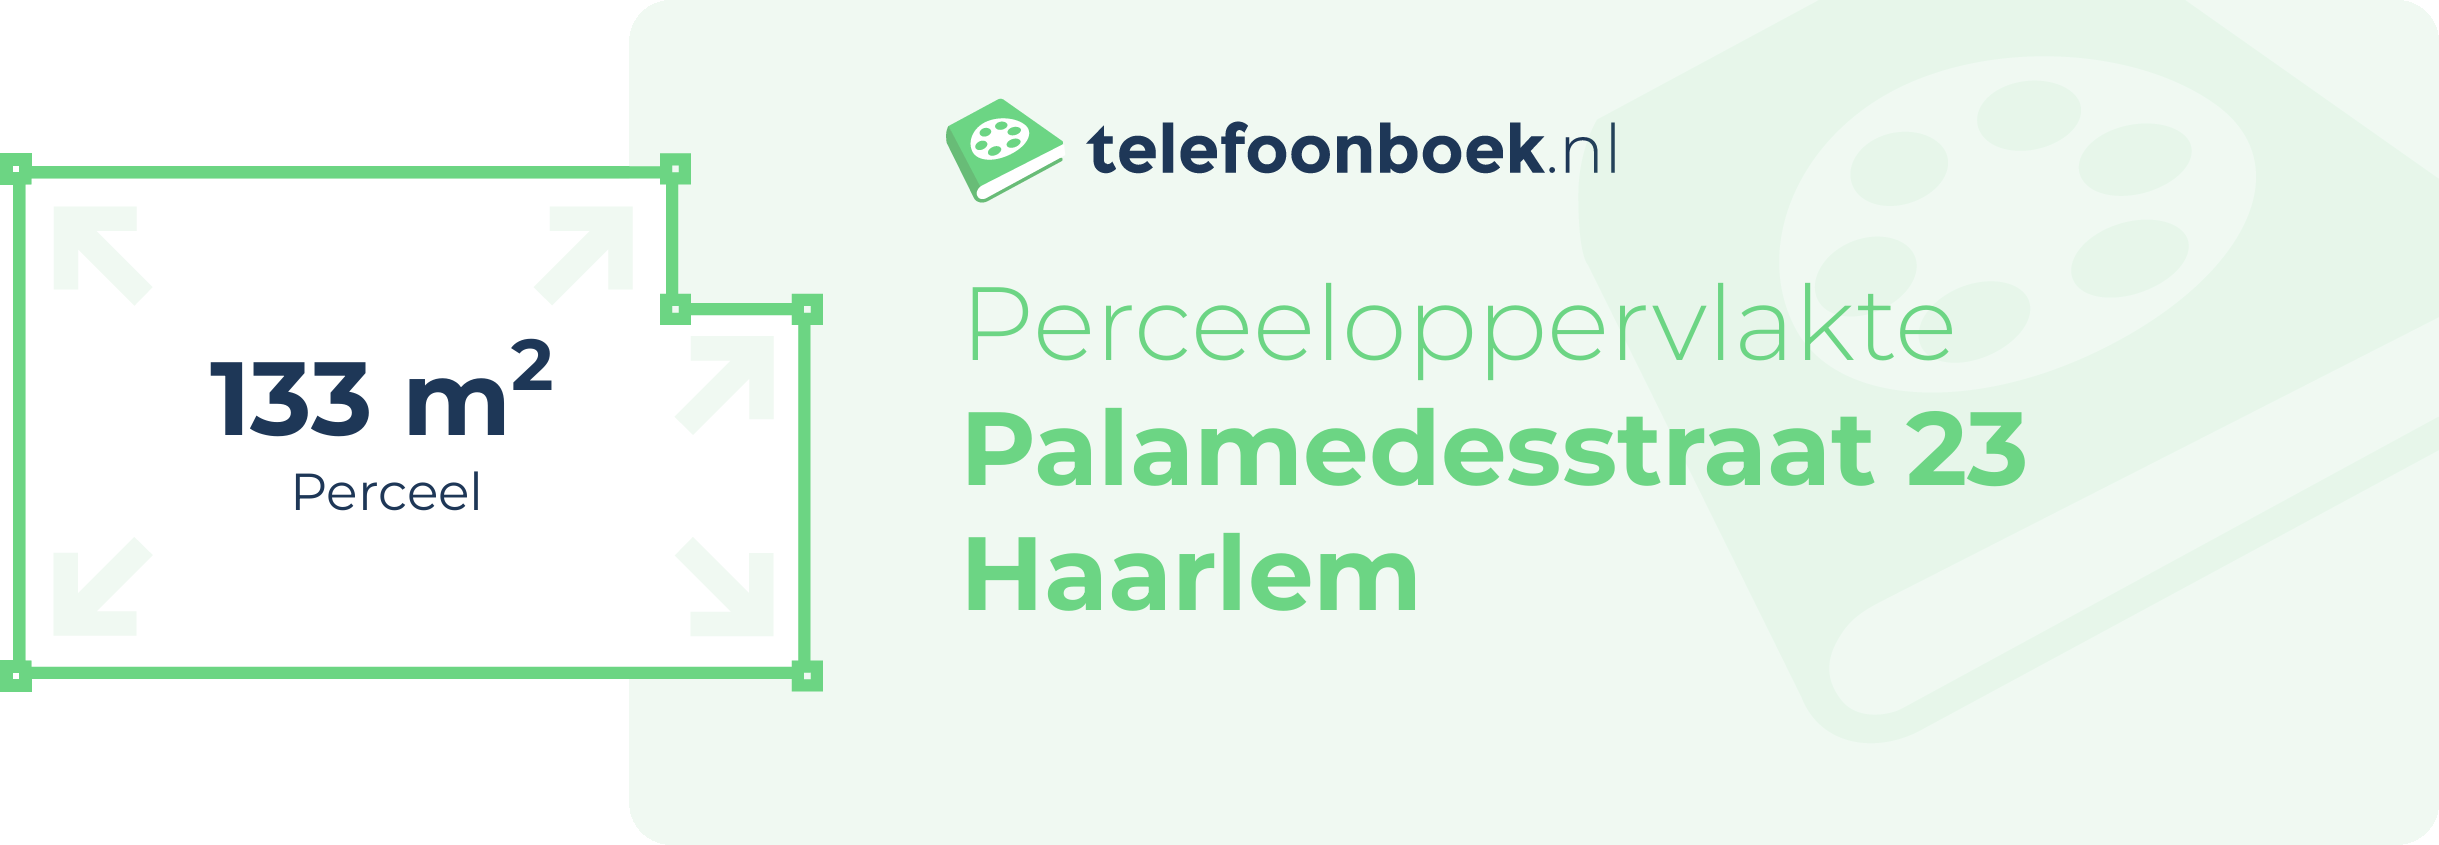 Perceeloppervlakte Palamedesstraat 23 Haarlem